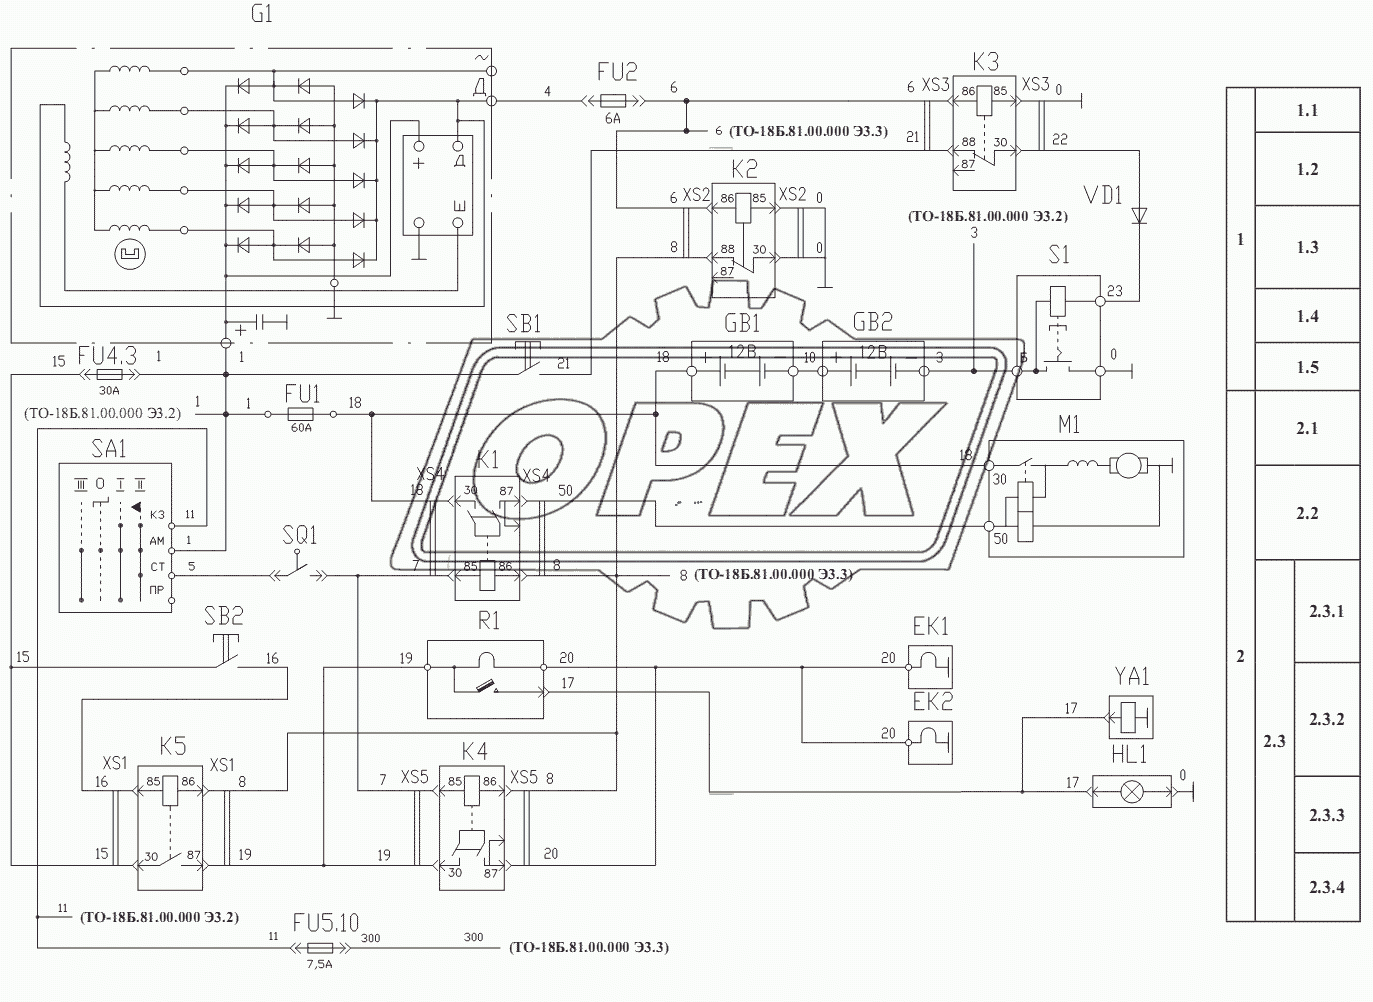 Схема электрическая принципиальная силовой установки ТО-28А.11.00.000 Э3.1